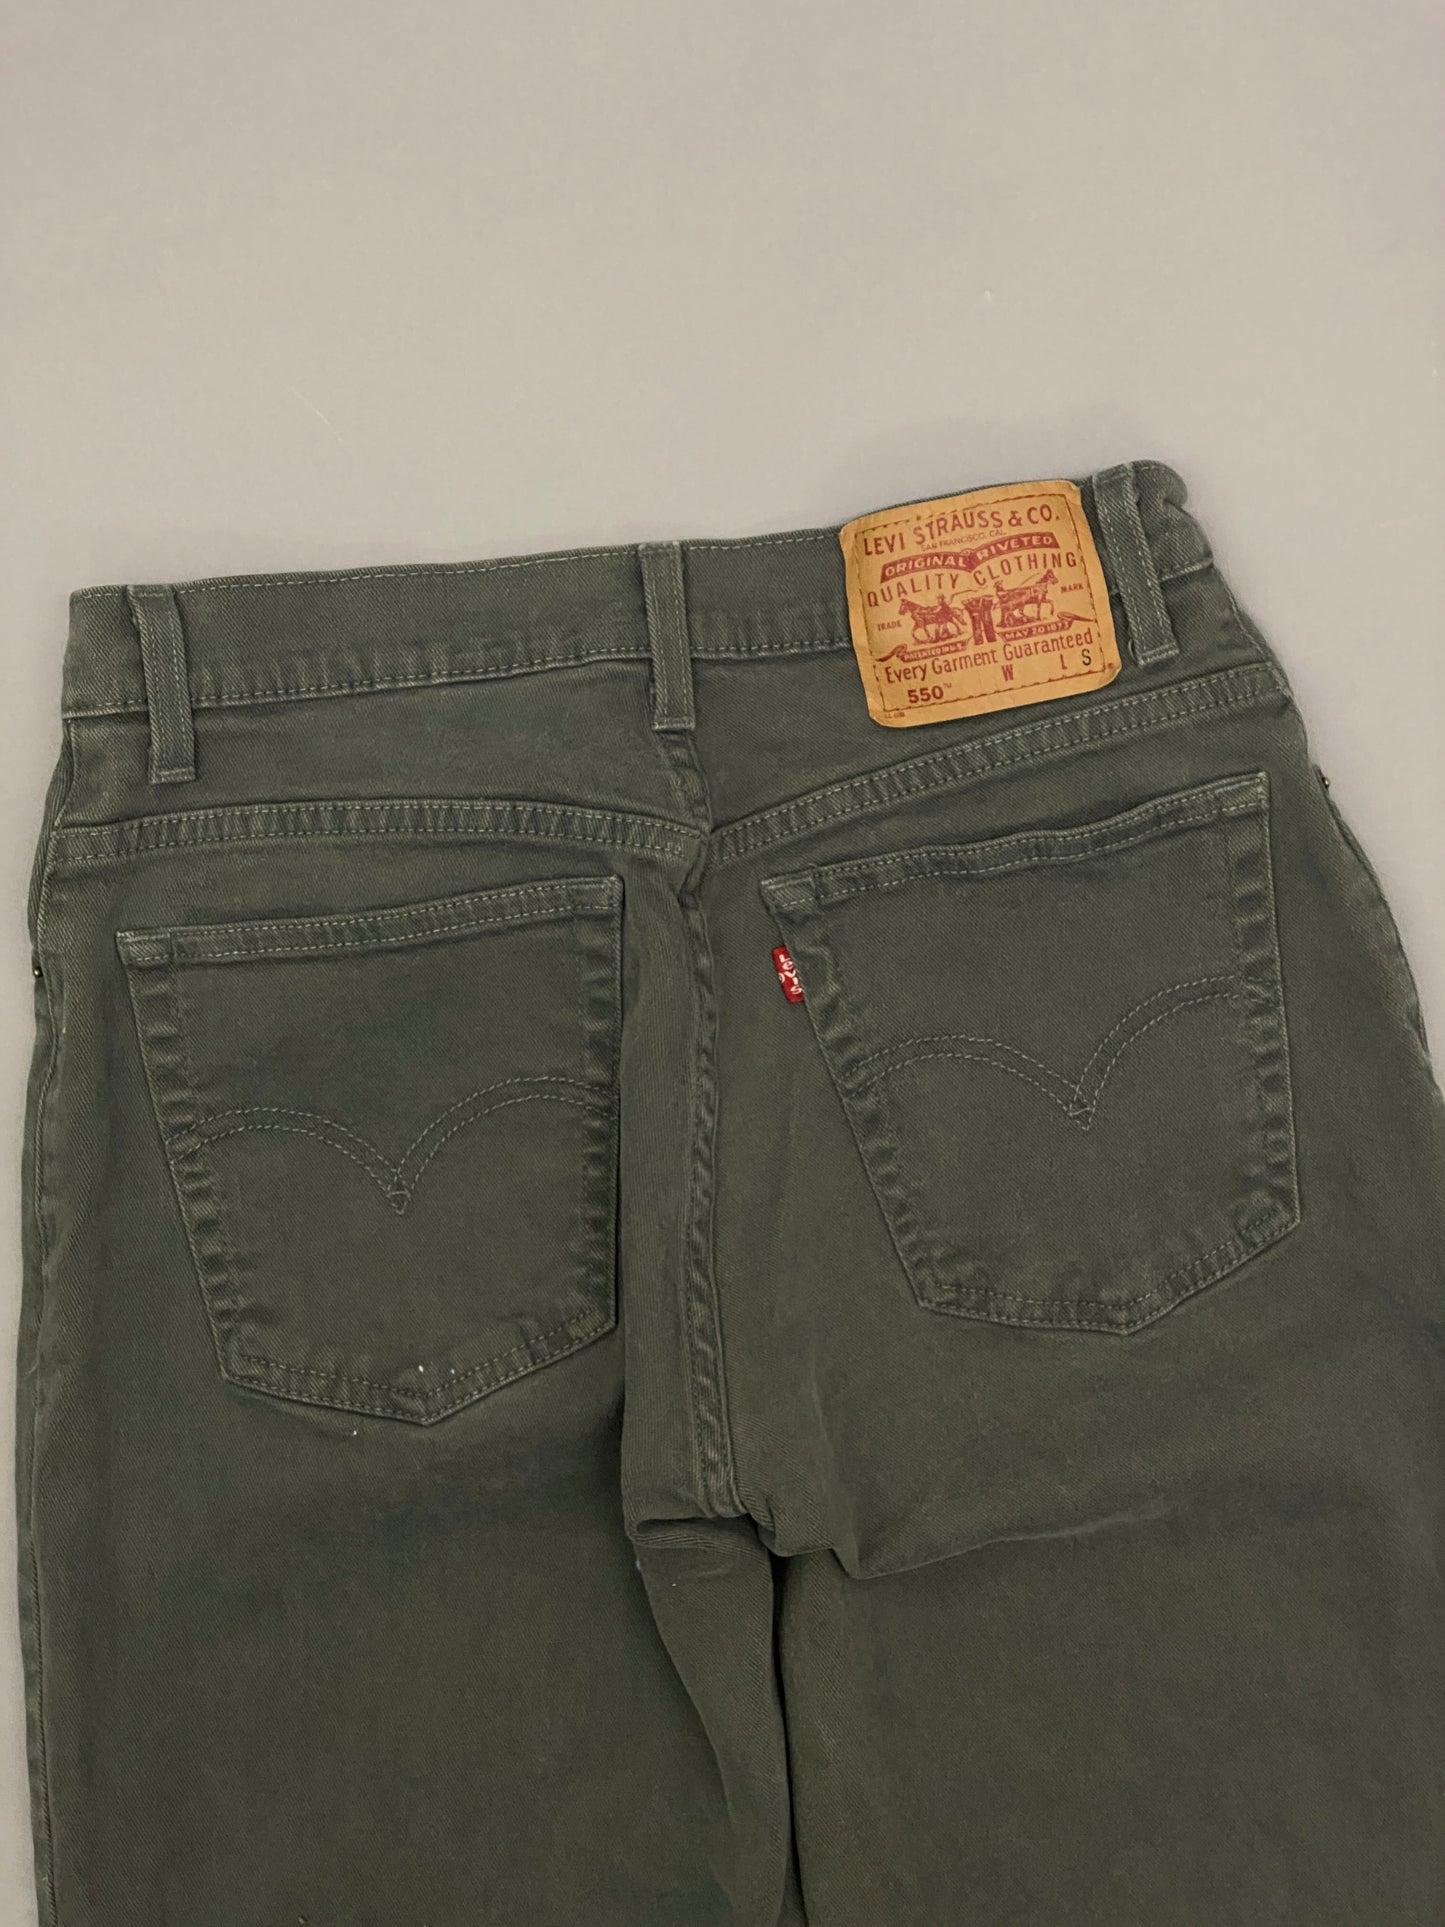 Levis 550 Vintage Jeans - Women's Small